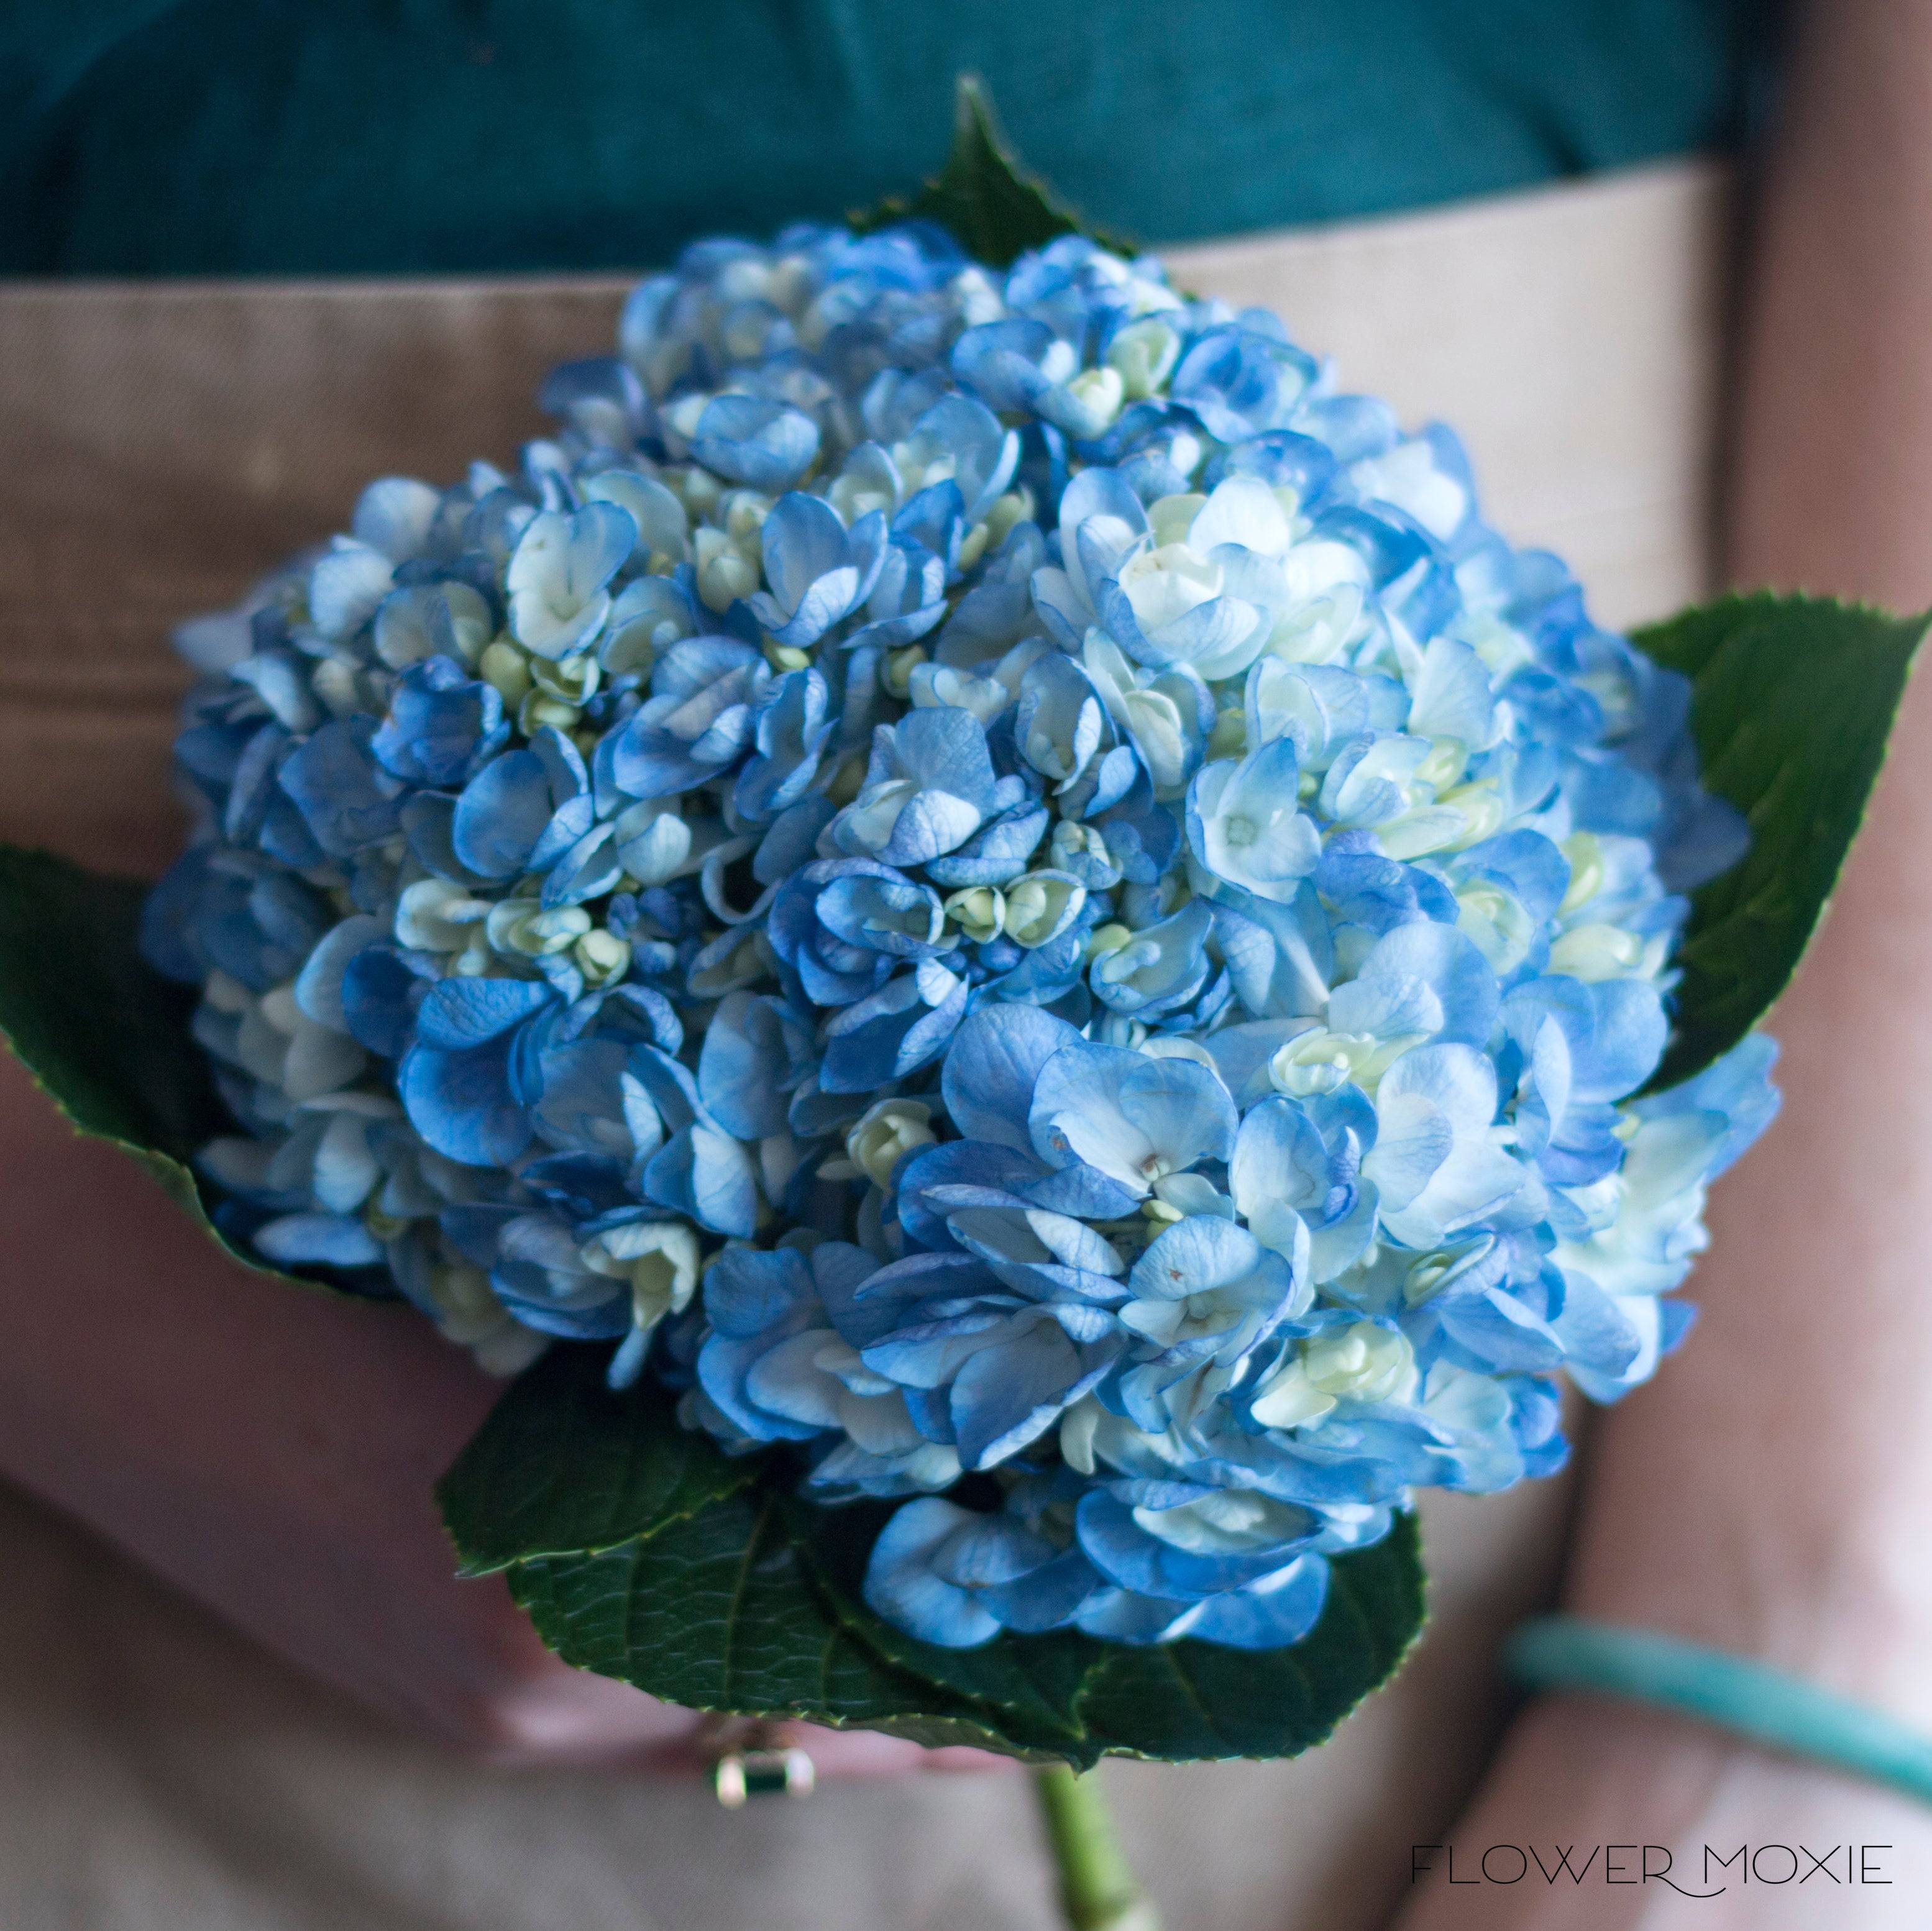 Dried Hydrangea Flower Bunch - Blue Color Hydrangea Flowers